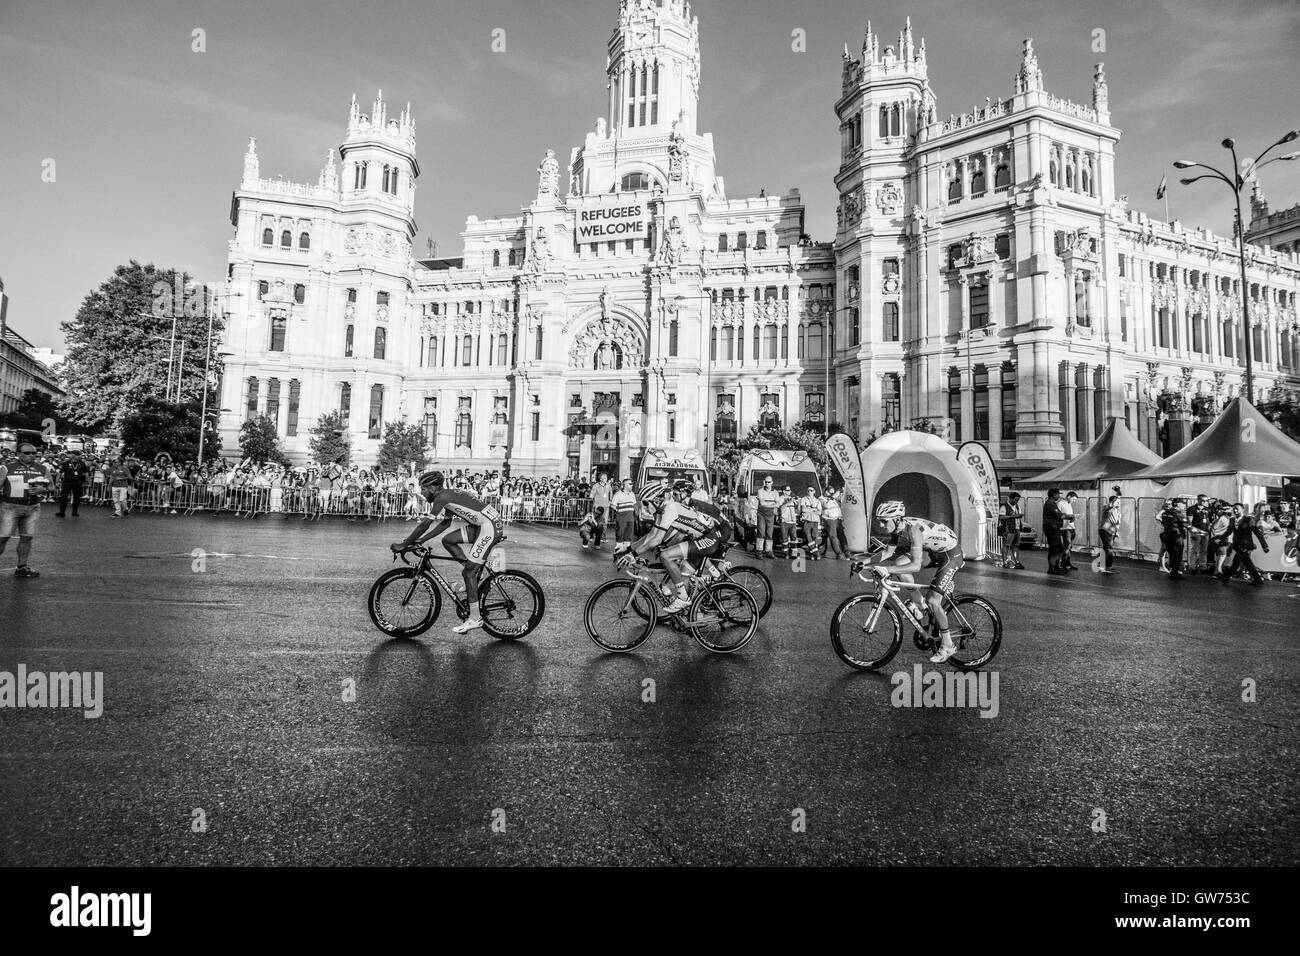 Madrid, Espagne. 11 Septembre, 2016. Loic Chetout (Cofidis), Peter Kennaugh (Team Sky), Koen Bownen (Lotto NL - Jumbo) et Quentin Jauregui (AG2R La Mondiale) ride durant la 21e étape de la course cycliste "La Vuelta" (Tour d'Espagne) entre Las Rozas de Madrid et le 11 septembre 2016 à Madrid, Espagne. Crédit : David Gato/Alamy Live News Banque D'Images